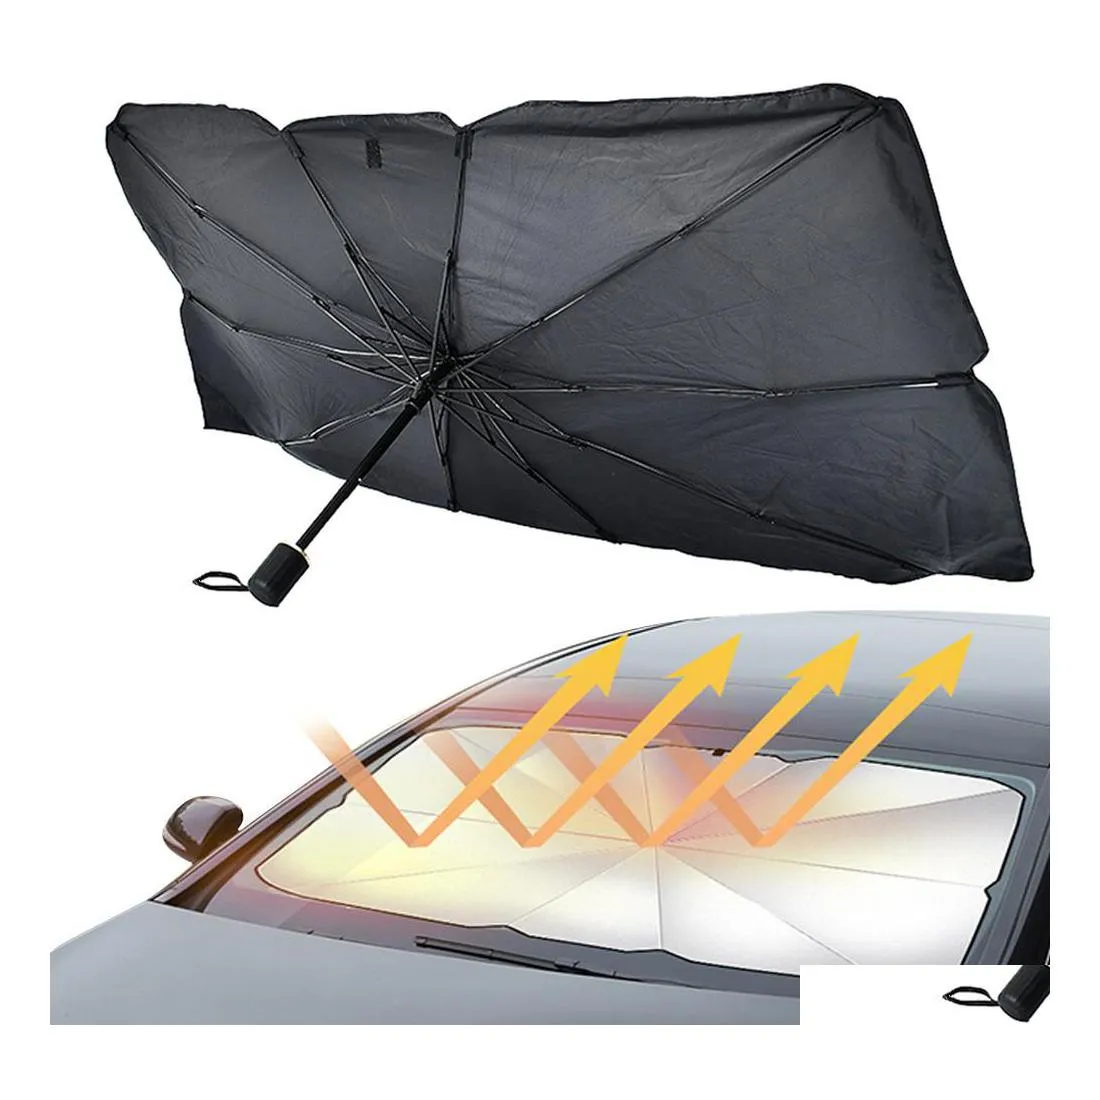 Araba güneşlik yaz şemsiyesi tipi koruyucu ön 2 model Damla Teslim Mobiller Motosikletler İç Aksesuarlar DH1LT